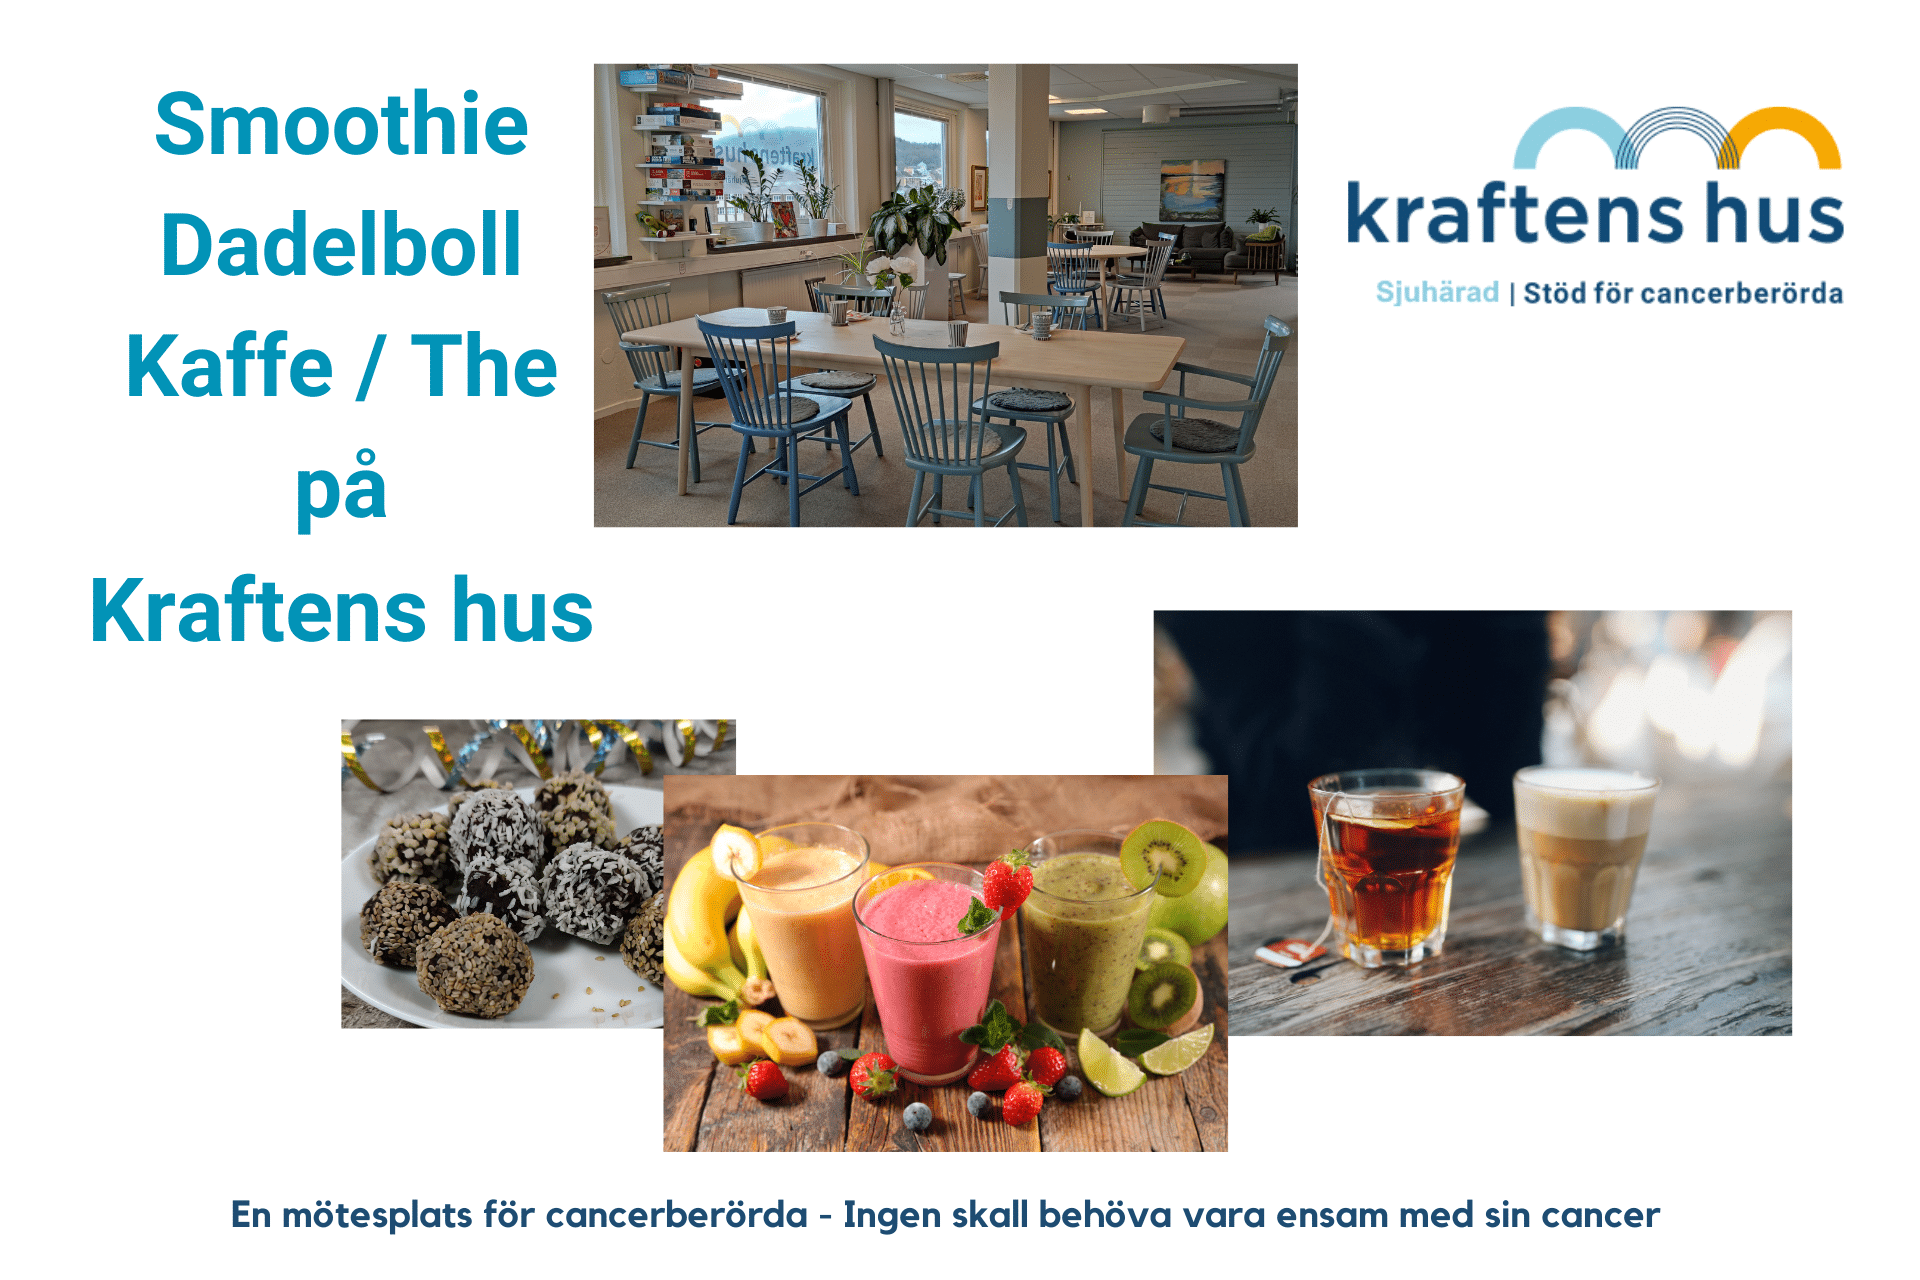 Smoothie, dadelboll, kaffe, the på Kraftens hus Sjuhärad